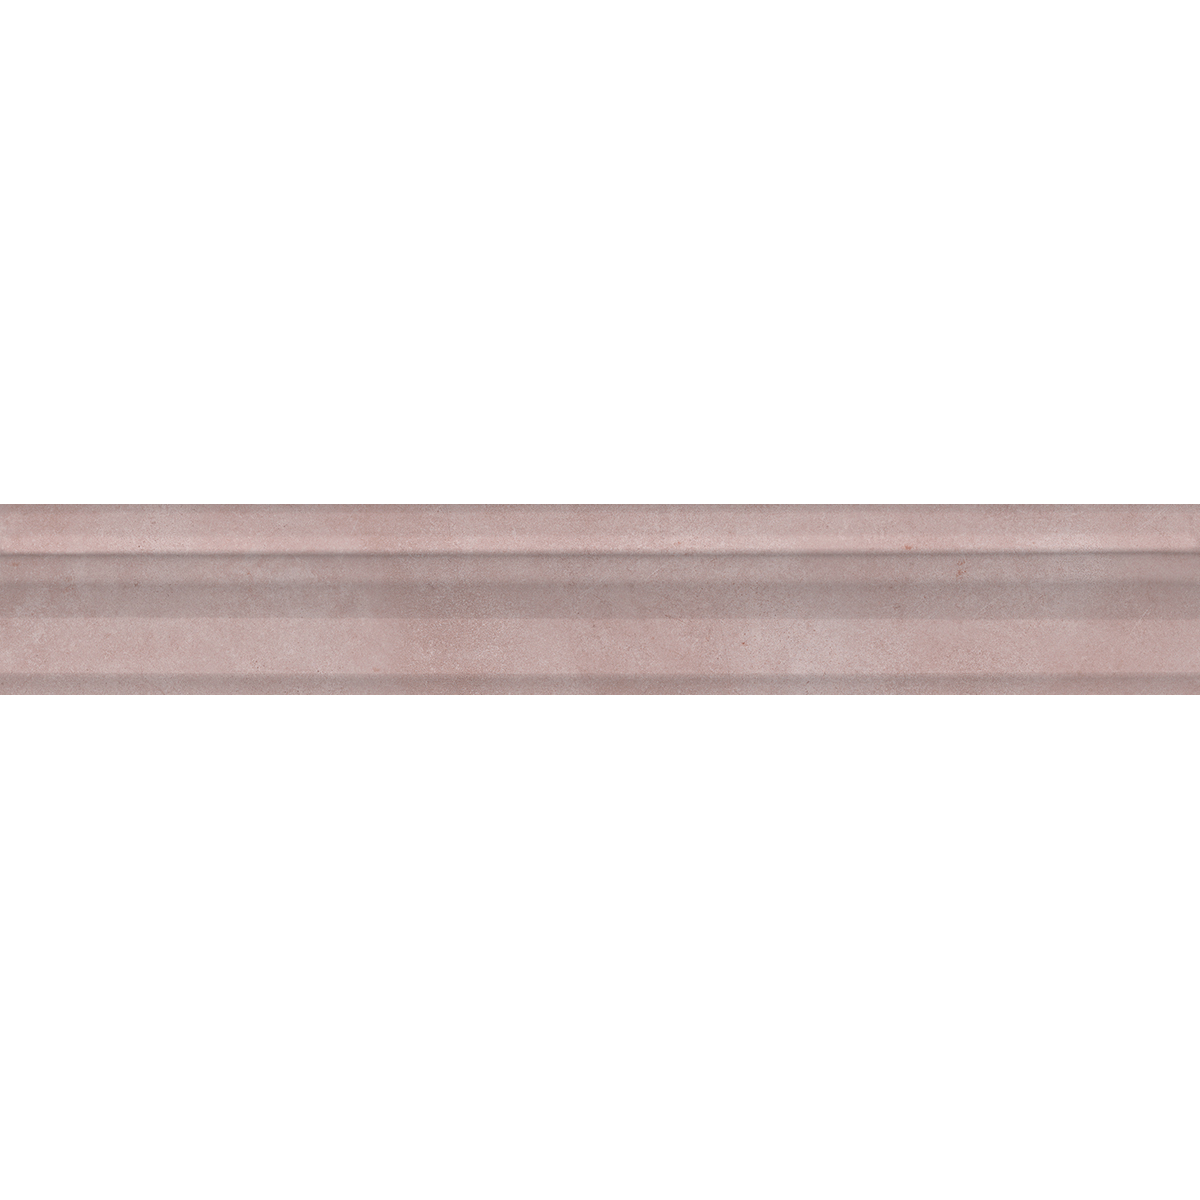 Бордюр Kerama Marazzi Багет Марсо розовый обрезной 30x5 см BLC020R керамический бордюр kerama marazzi марсо багет белый обрезной blc017r 5х30 см